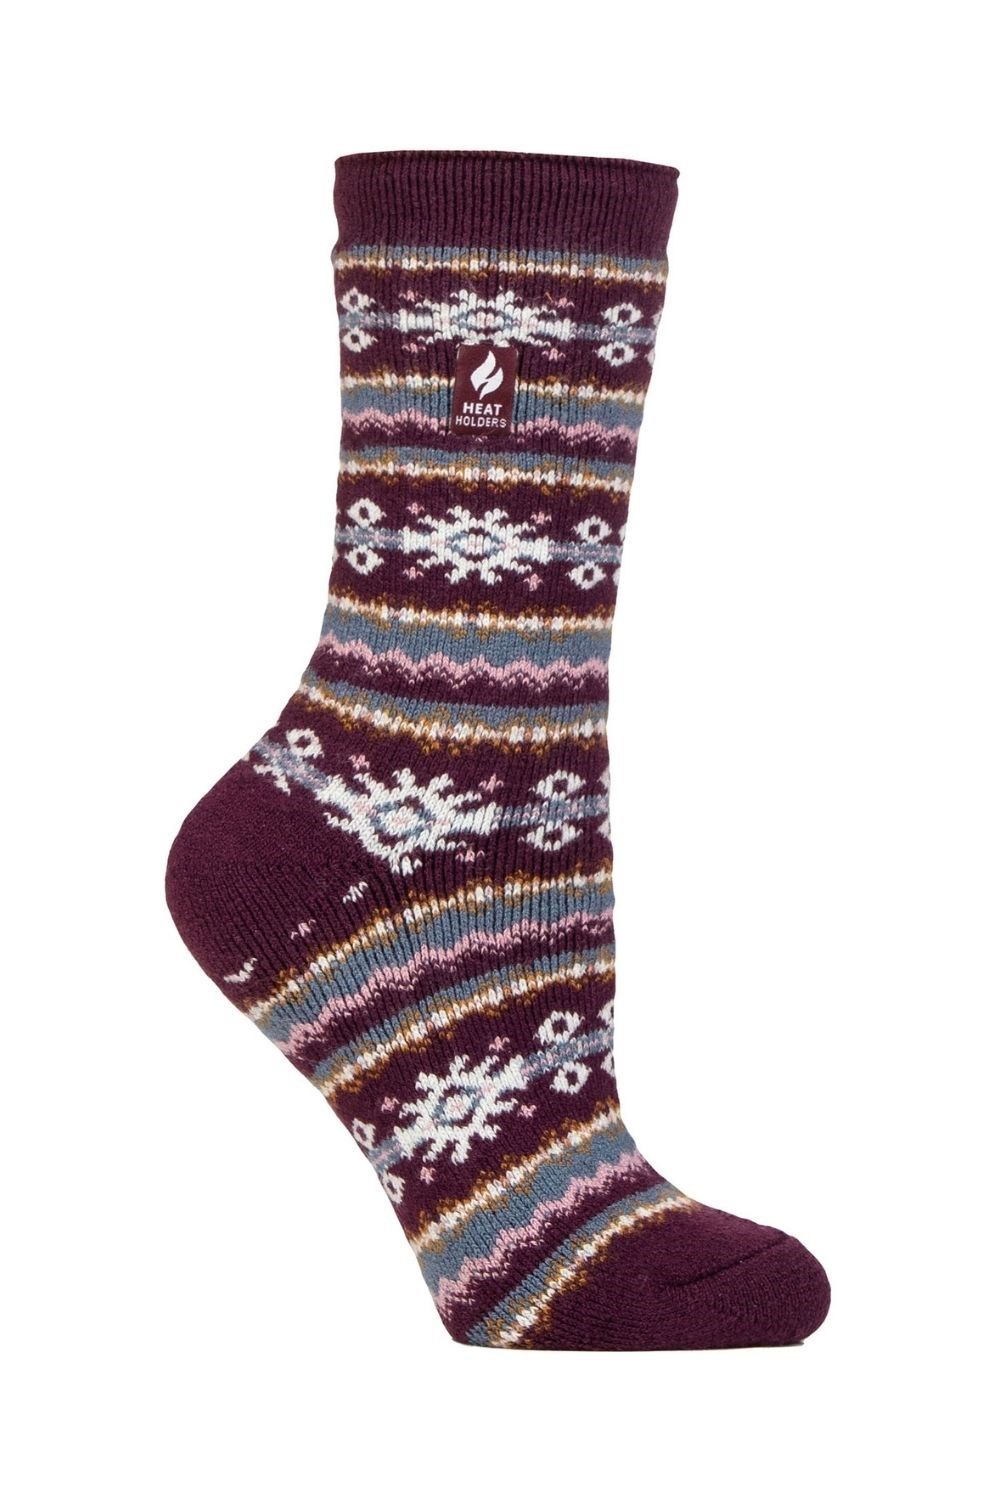 Ladies Thermal Winter Socks -